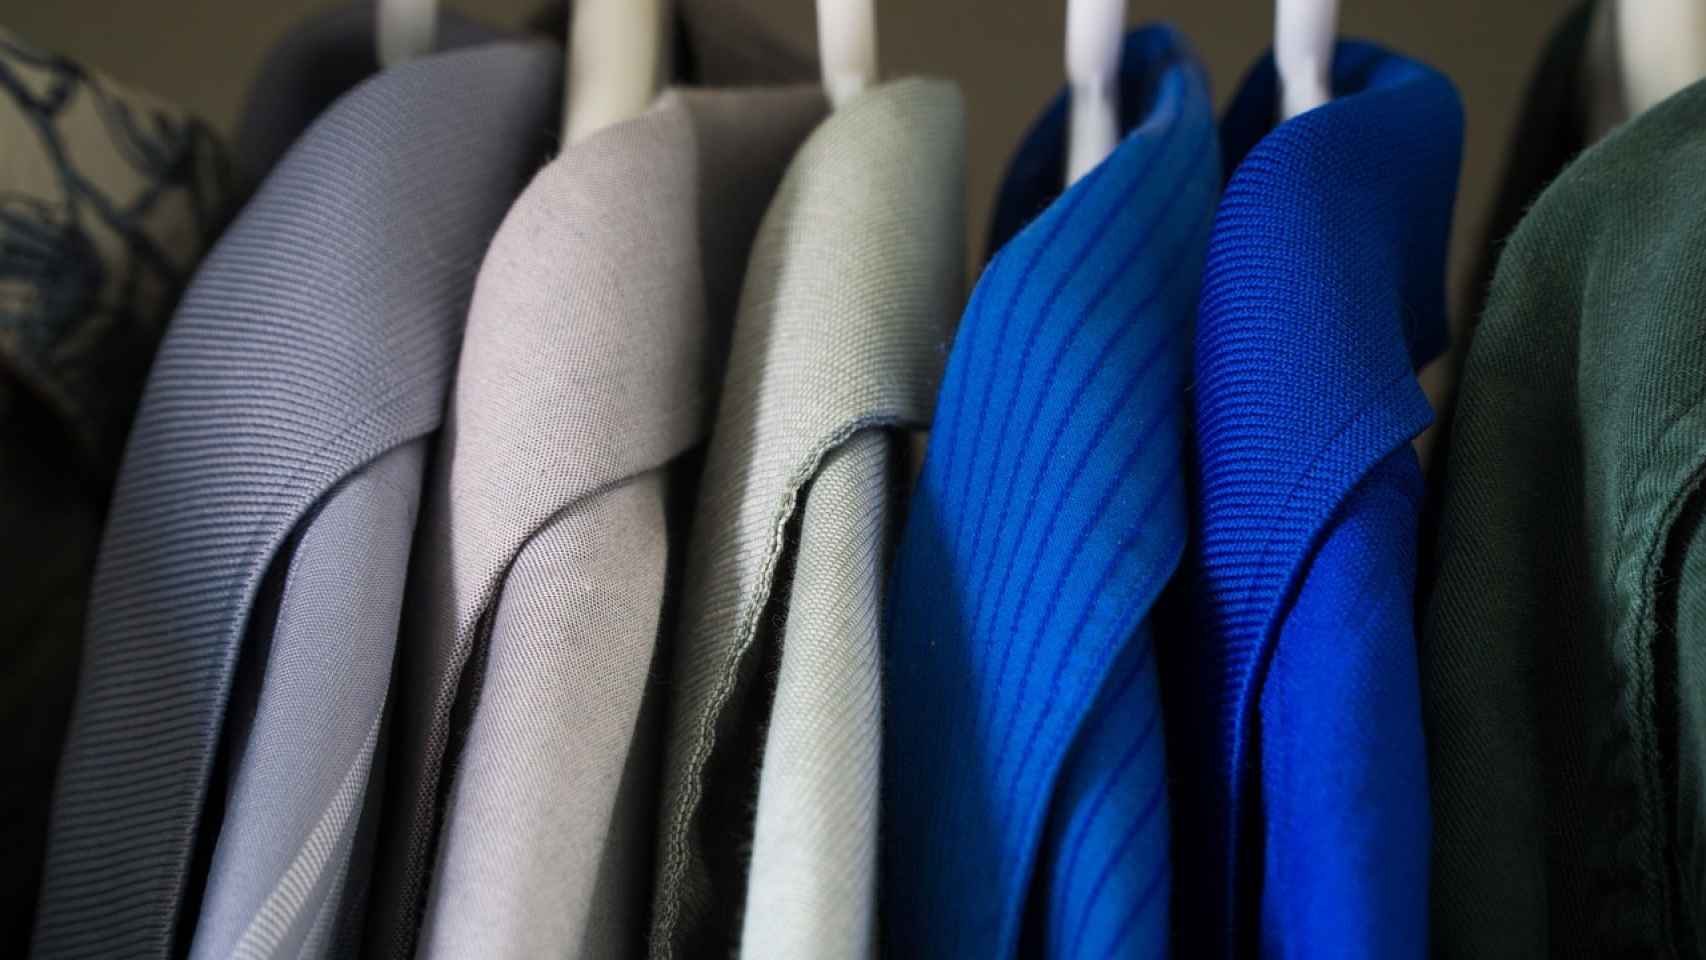 Cómo organizar un armario de ropa